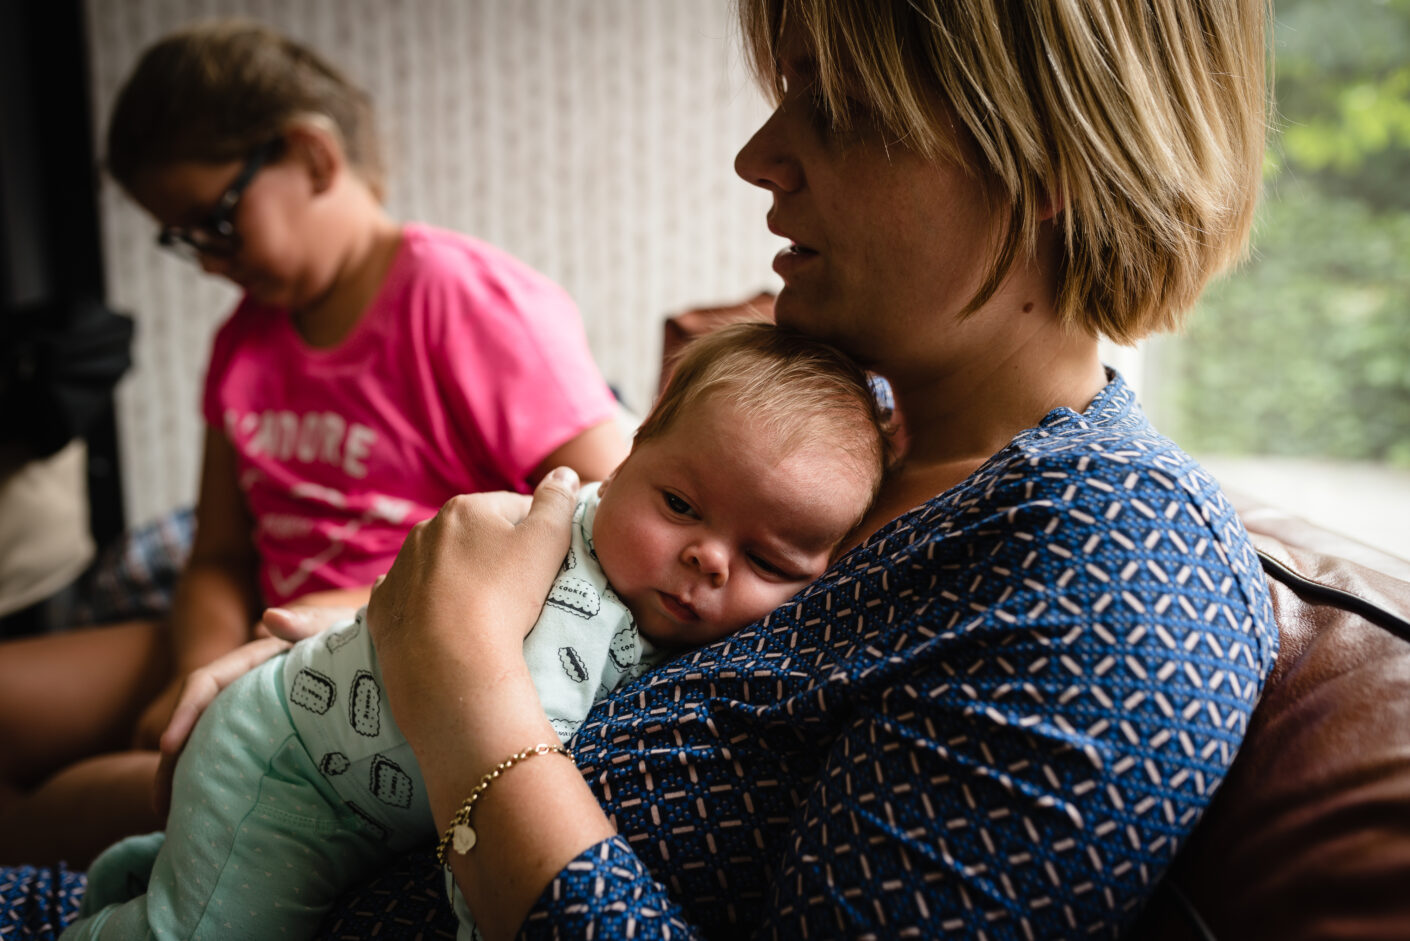 Day in the life bij gezin in Haren, fotograaf Assen, newborn shoot tweeling